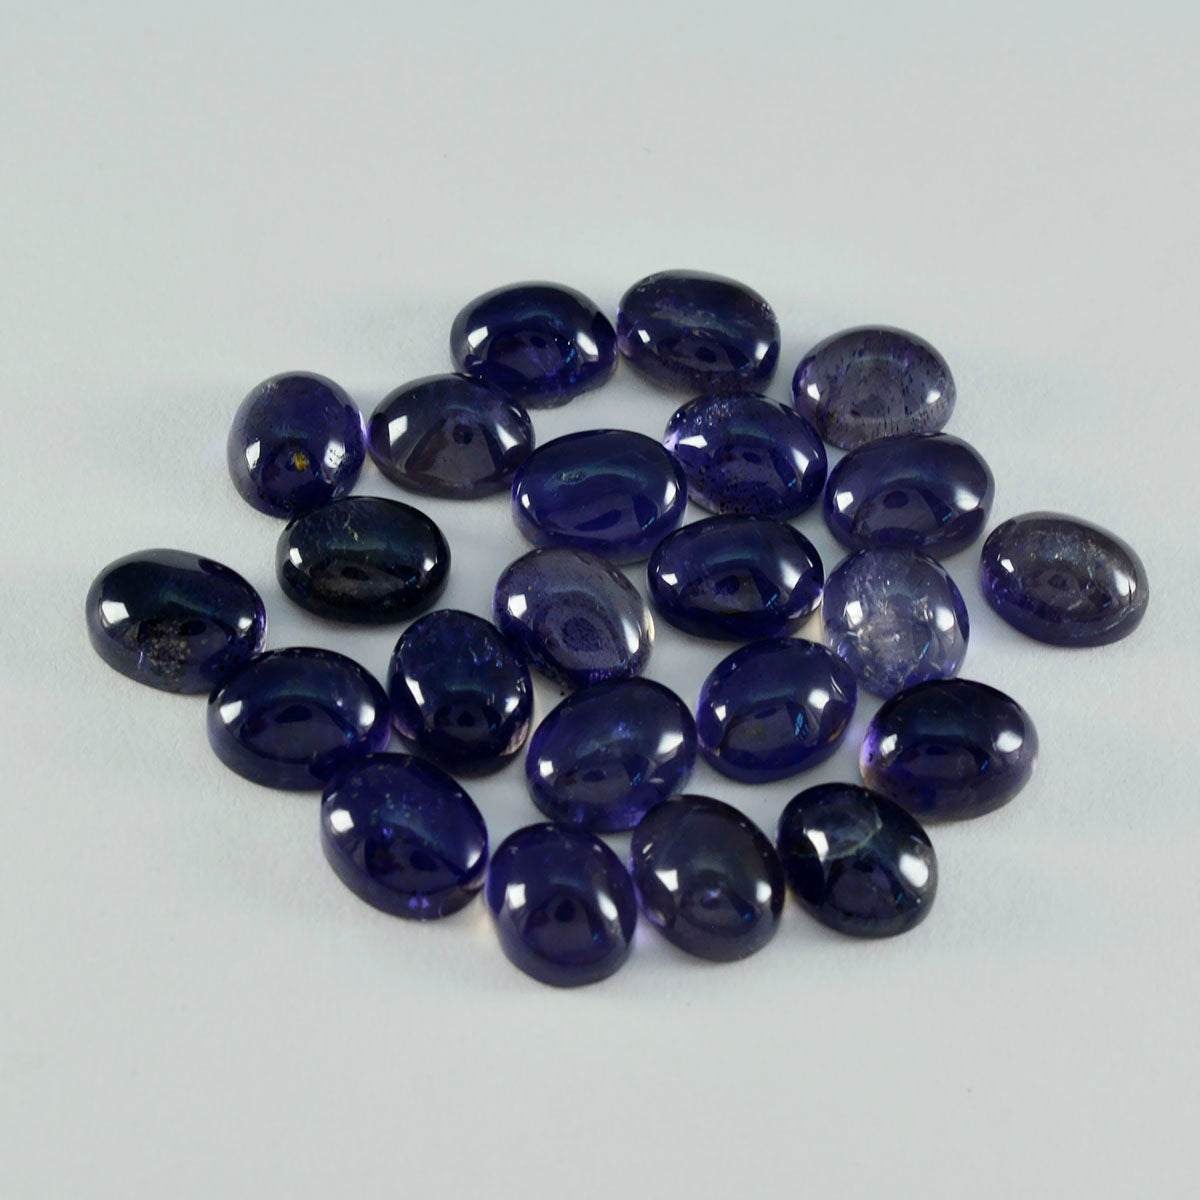 riyogems 1 pz cabochon di iolite blu 9x11 mm di forma ovale, gemme sfuse di ottima qualità